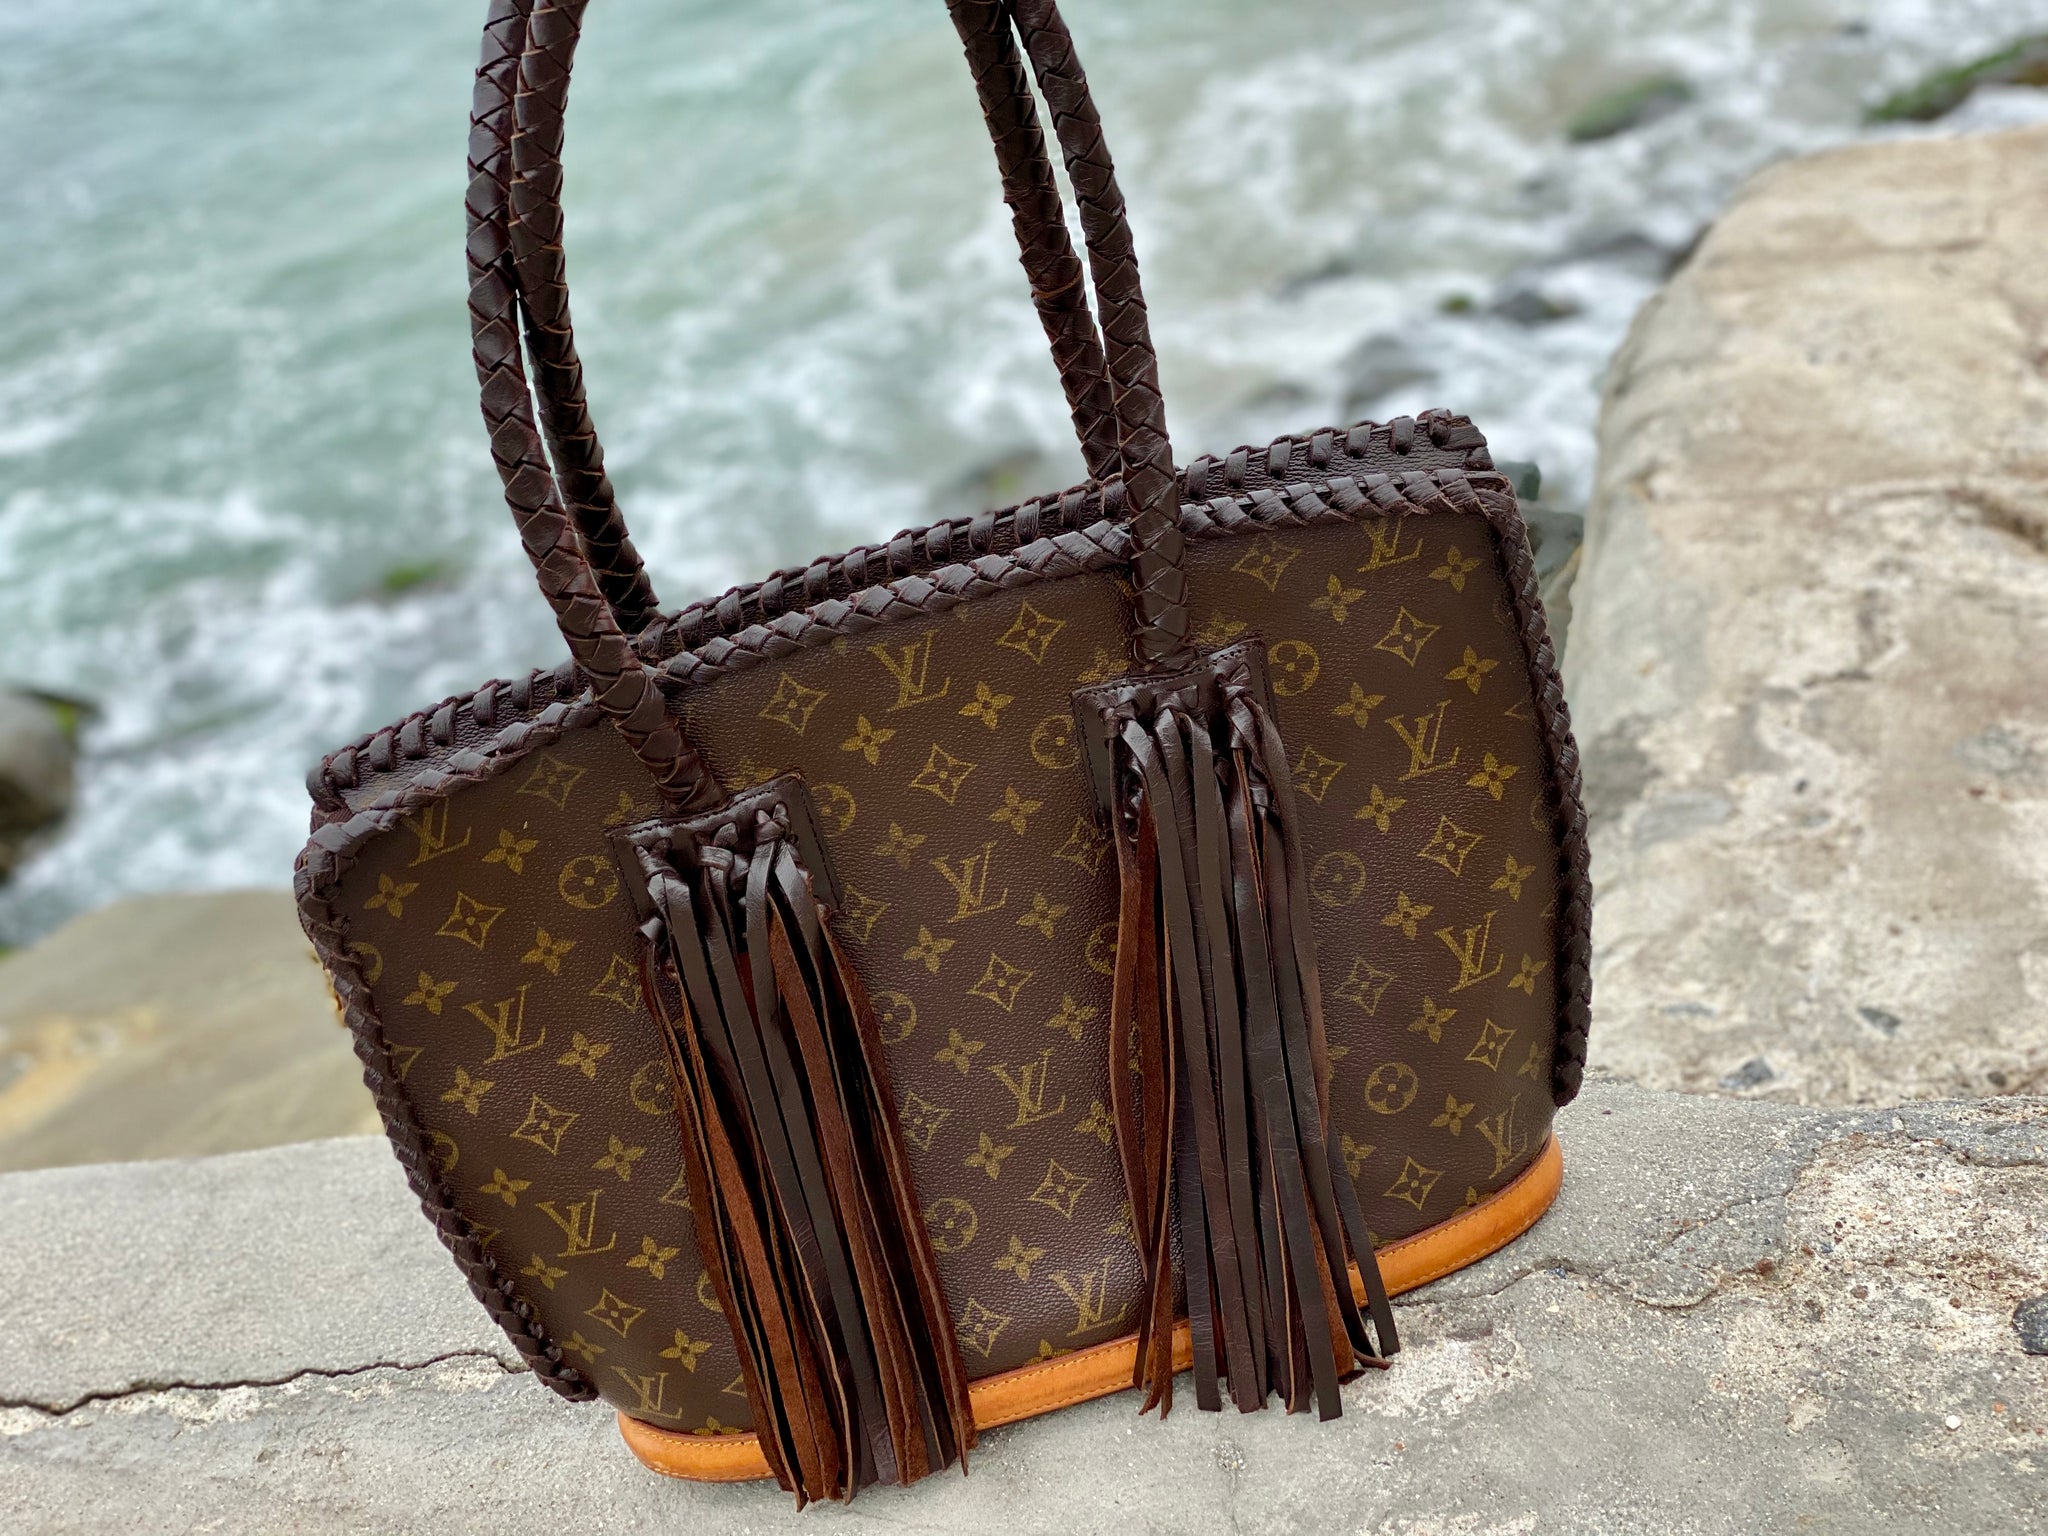 100% Authentic vintage Louis Vuitton fringe bags with a bohemian